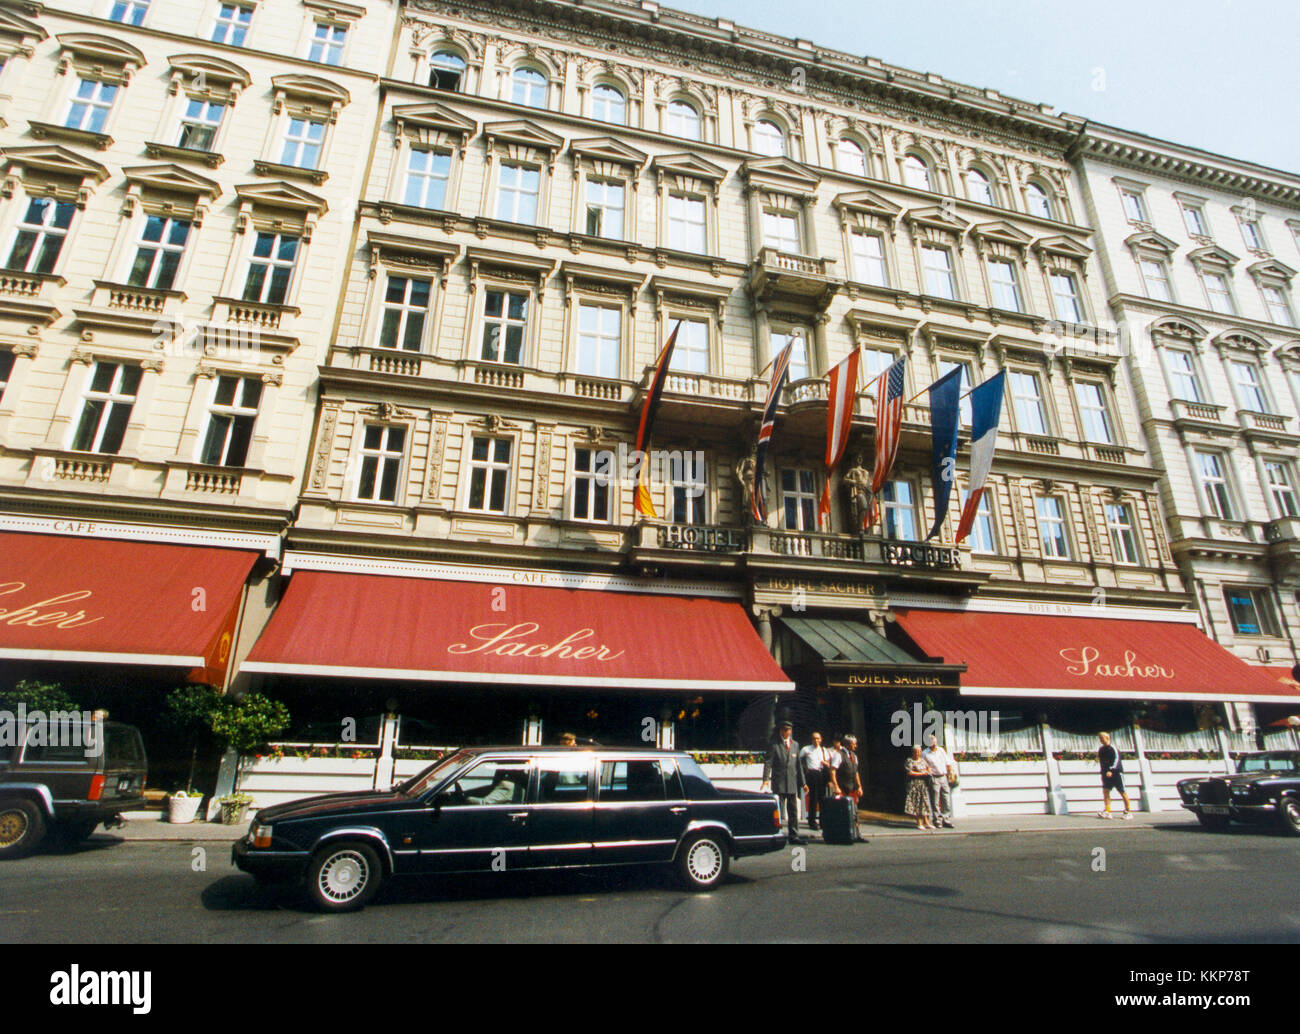 HOTEL SACHER Vienna Austria 2010 Stock Photo